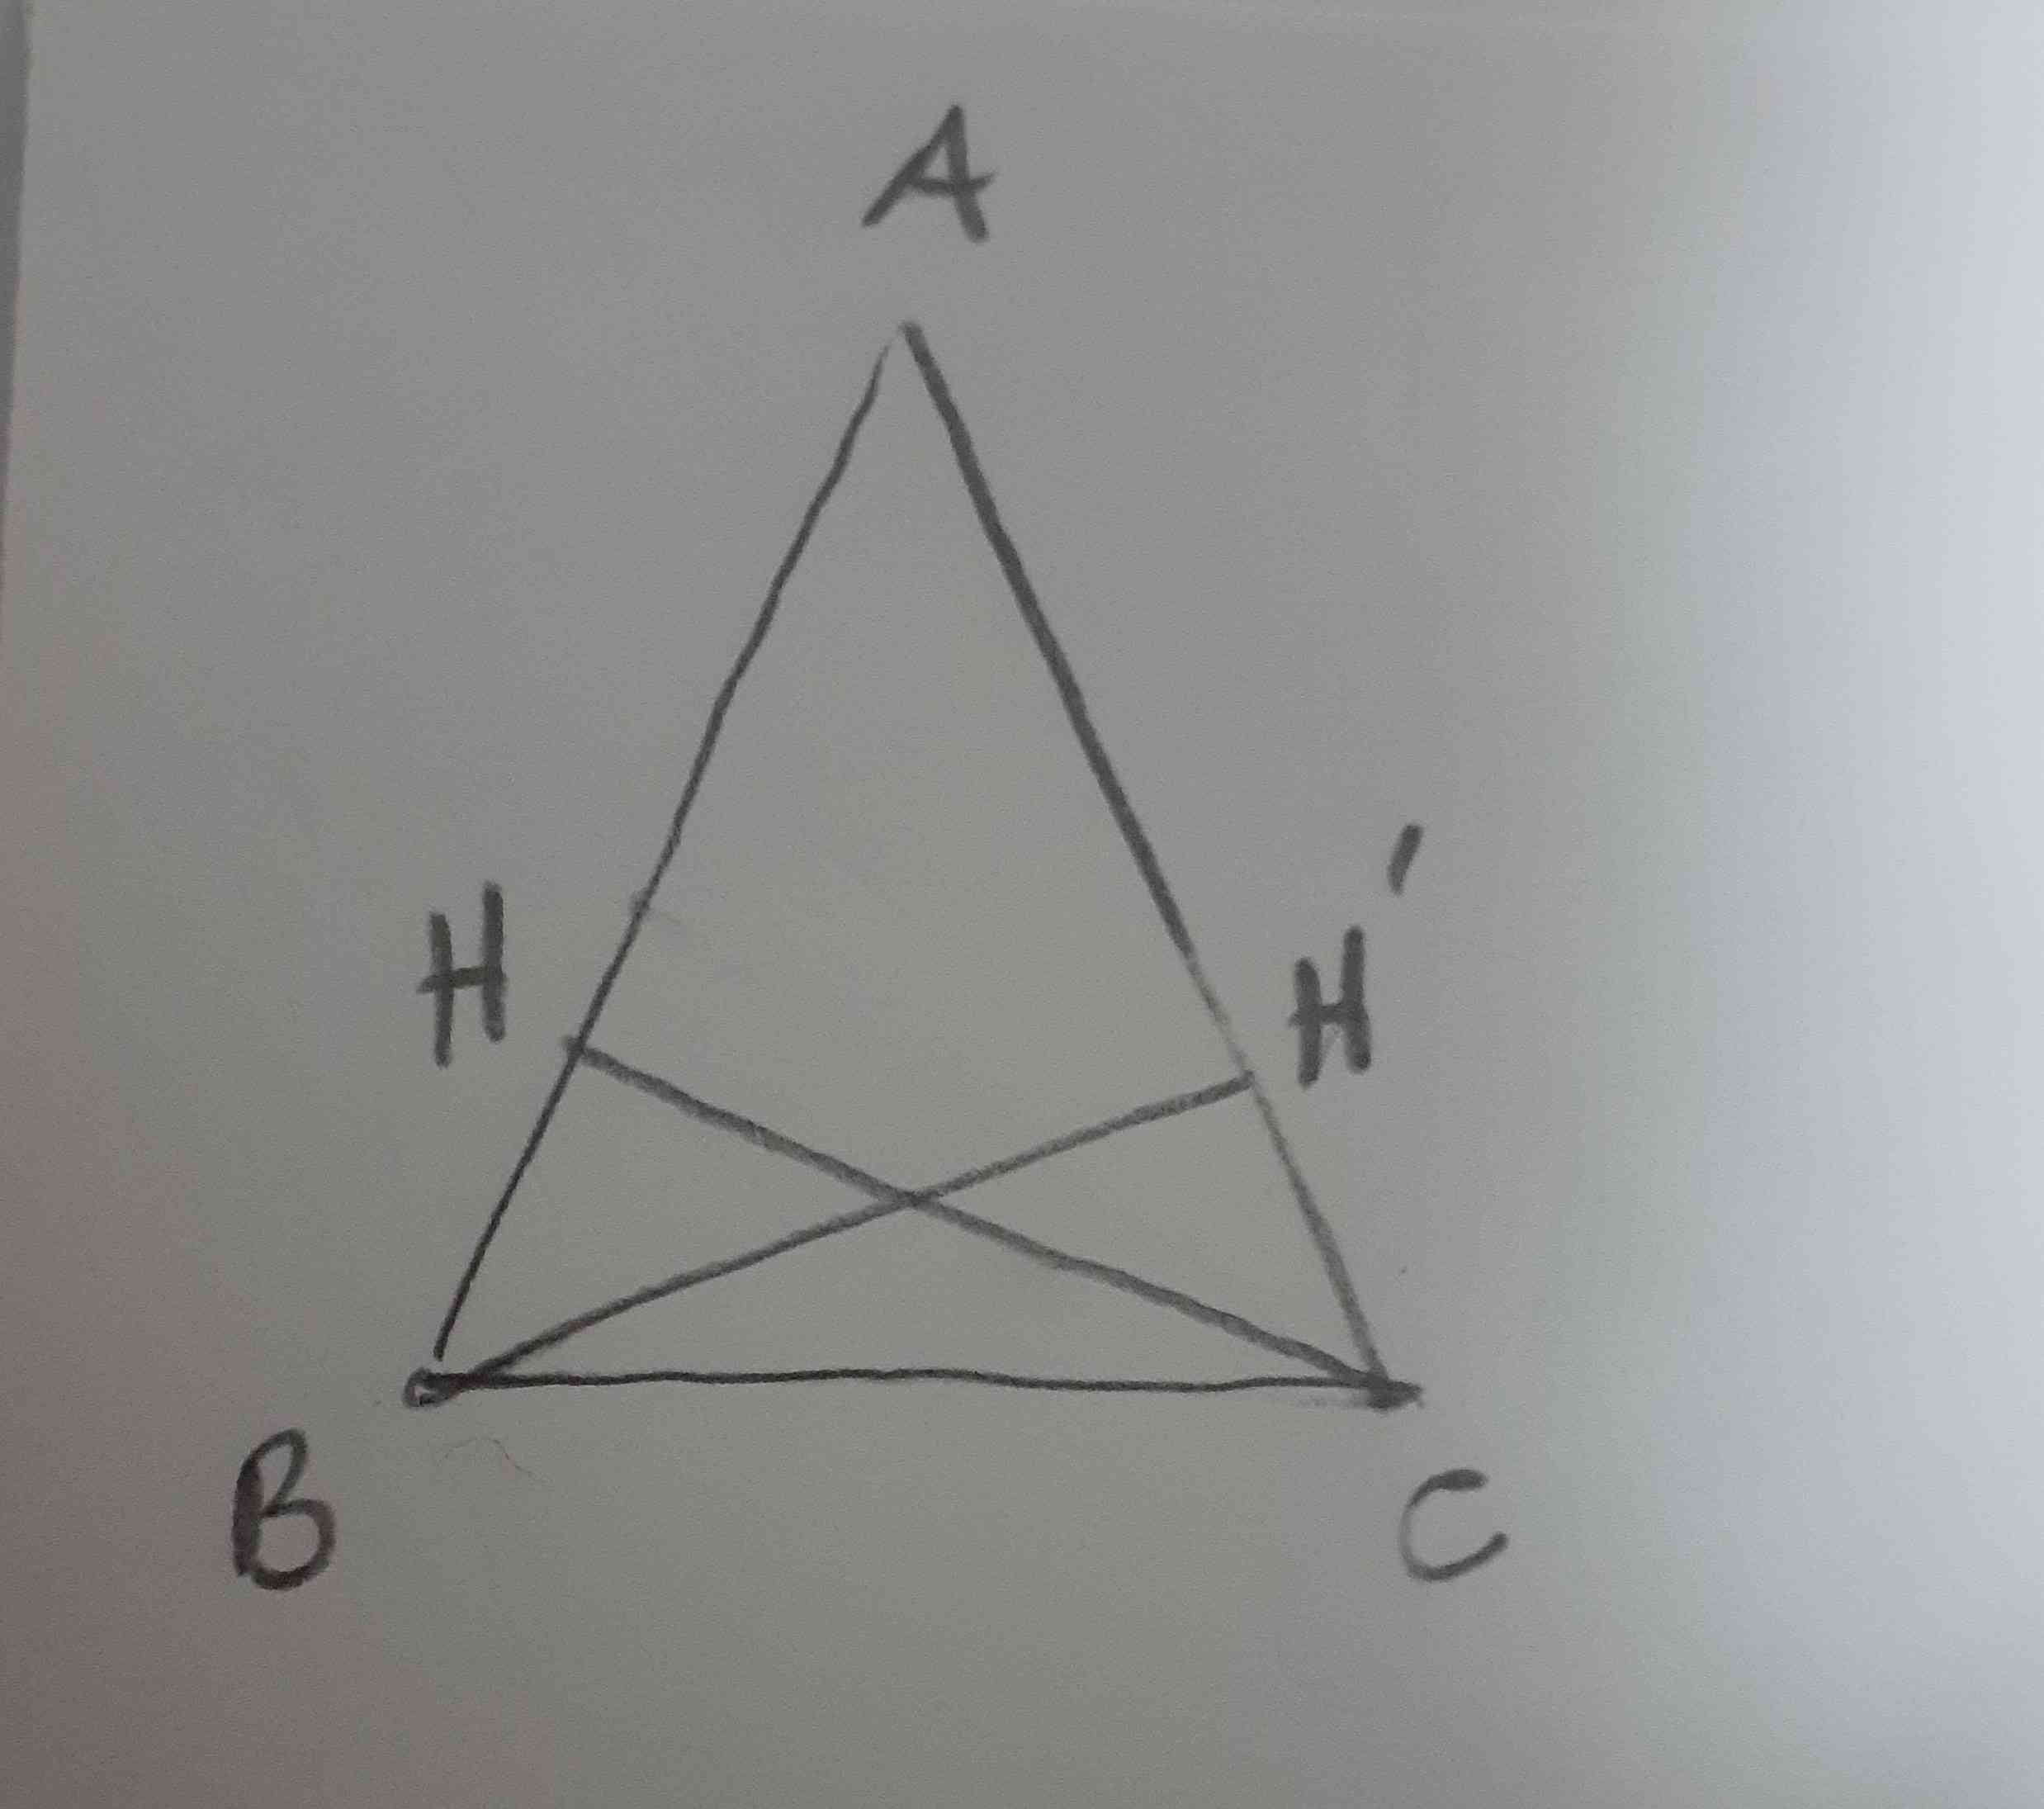 مثلث ABC متساوی الساقين است اگر `BH وCH ارتفاع وارد بر ساق ها باشند ثابت کنید
 BH`= CH